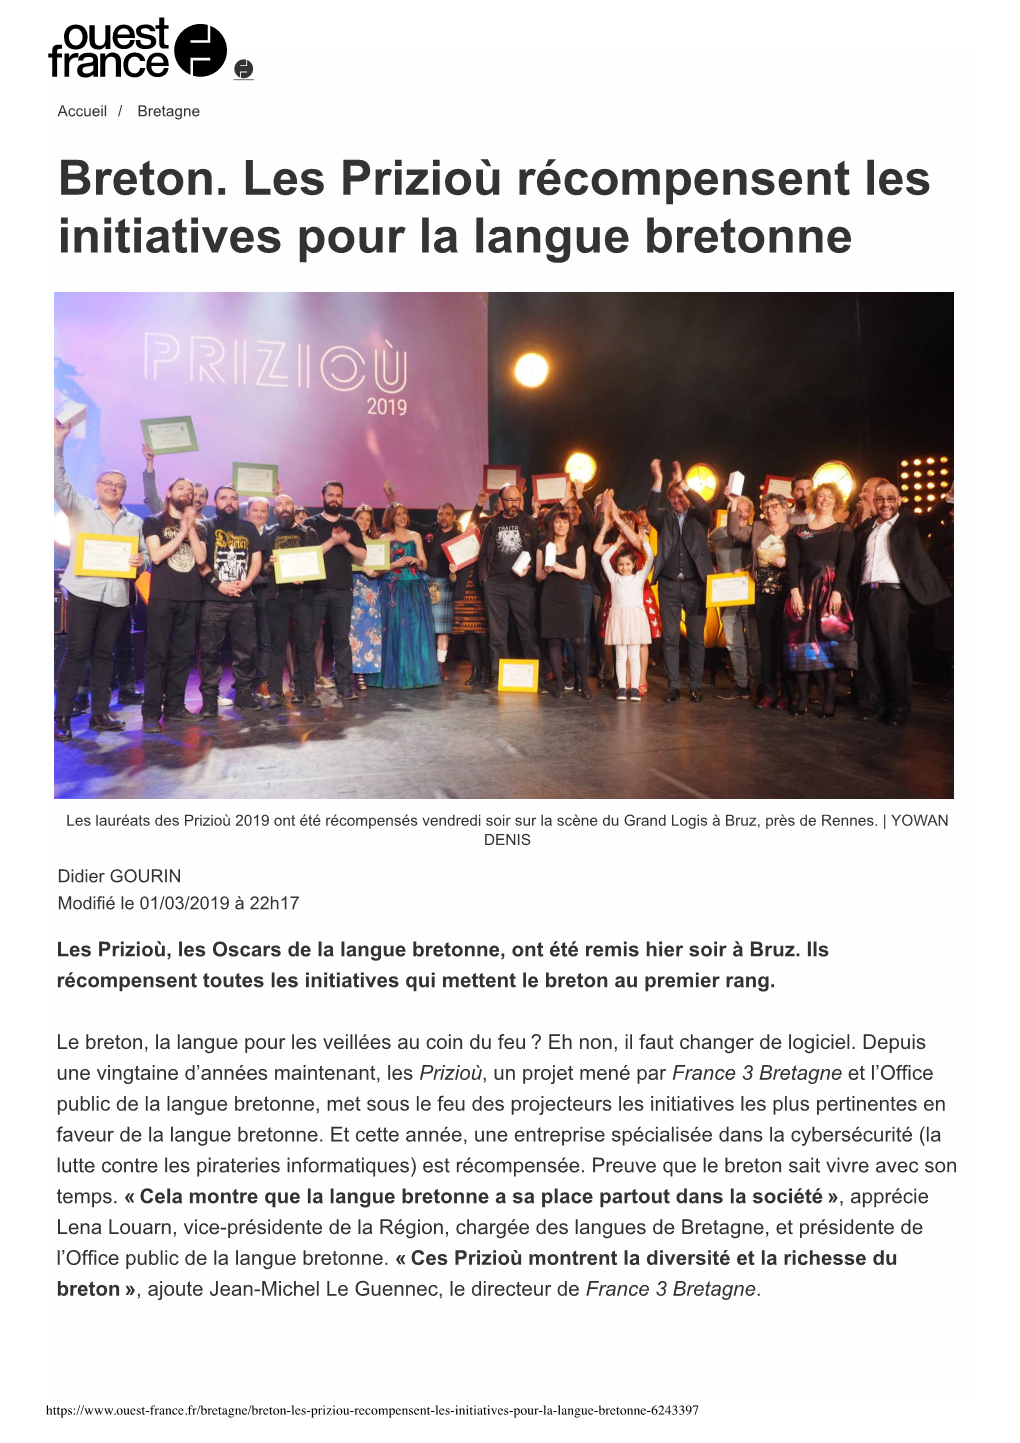 Breton. Les Prizioù Récompensent Les Initiatives Pour La Langue Bretonne